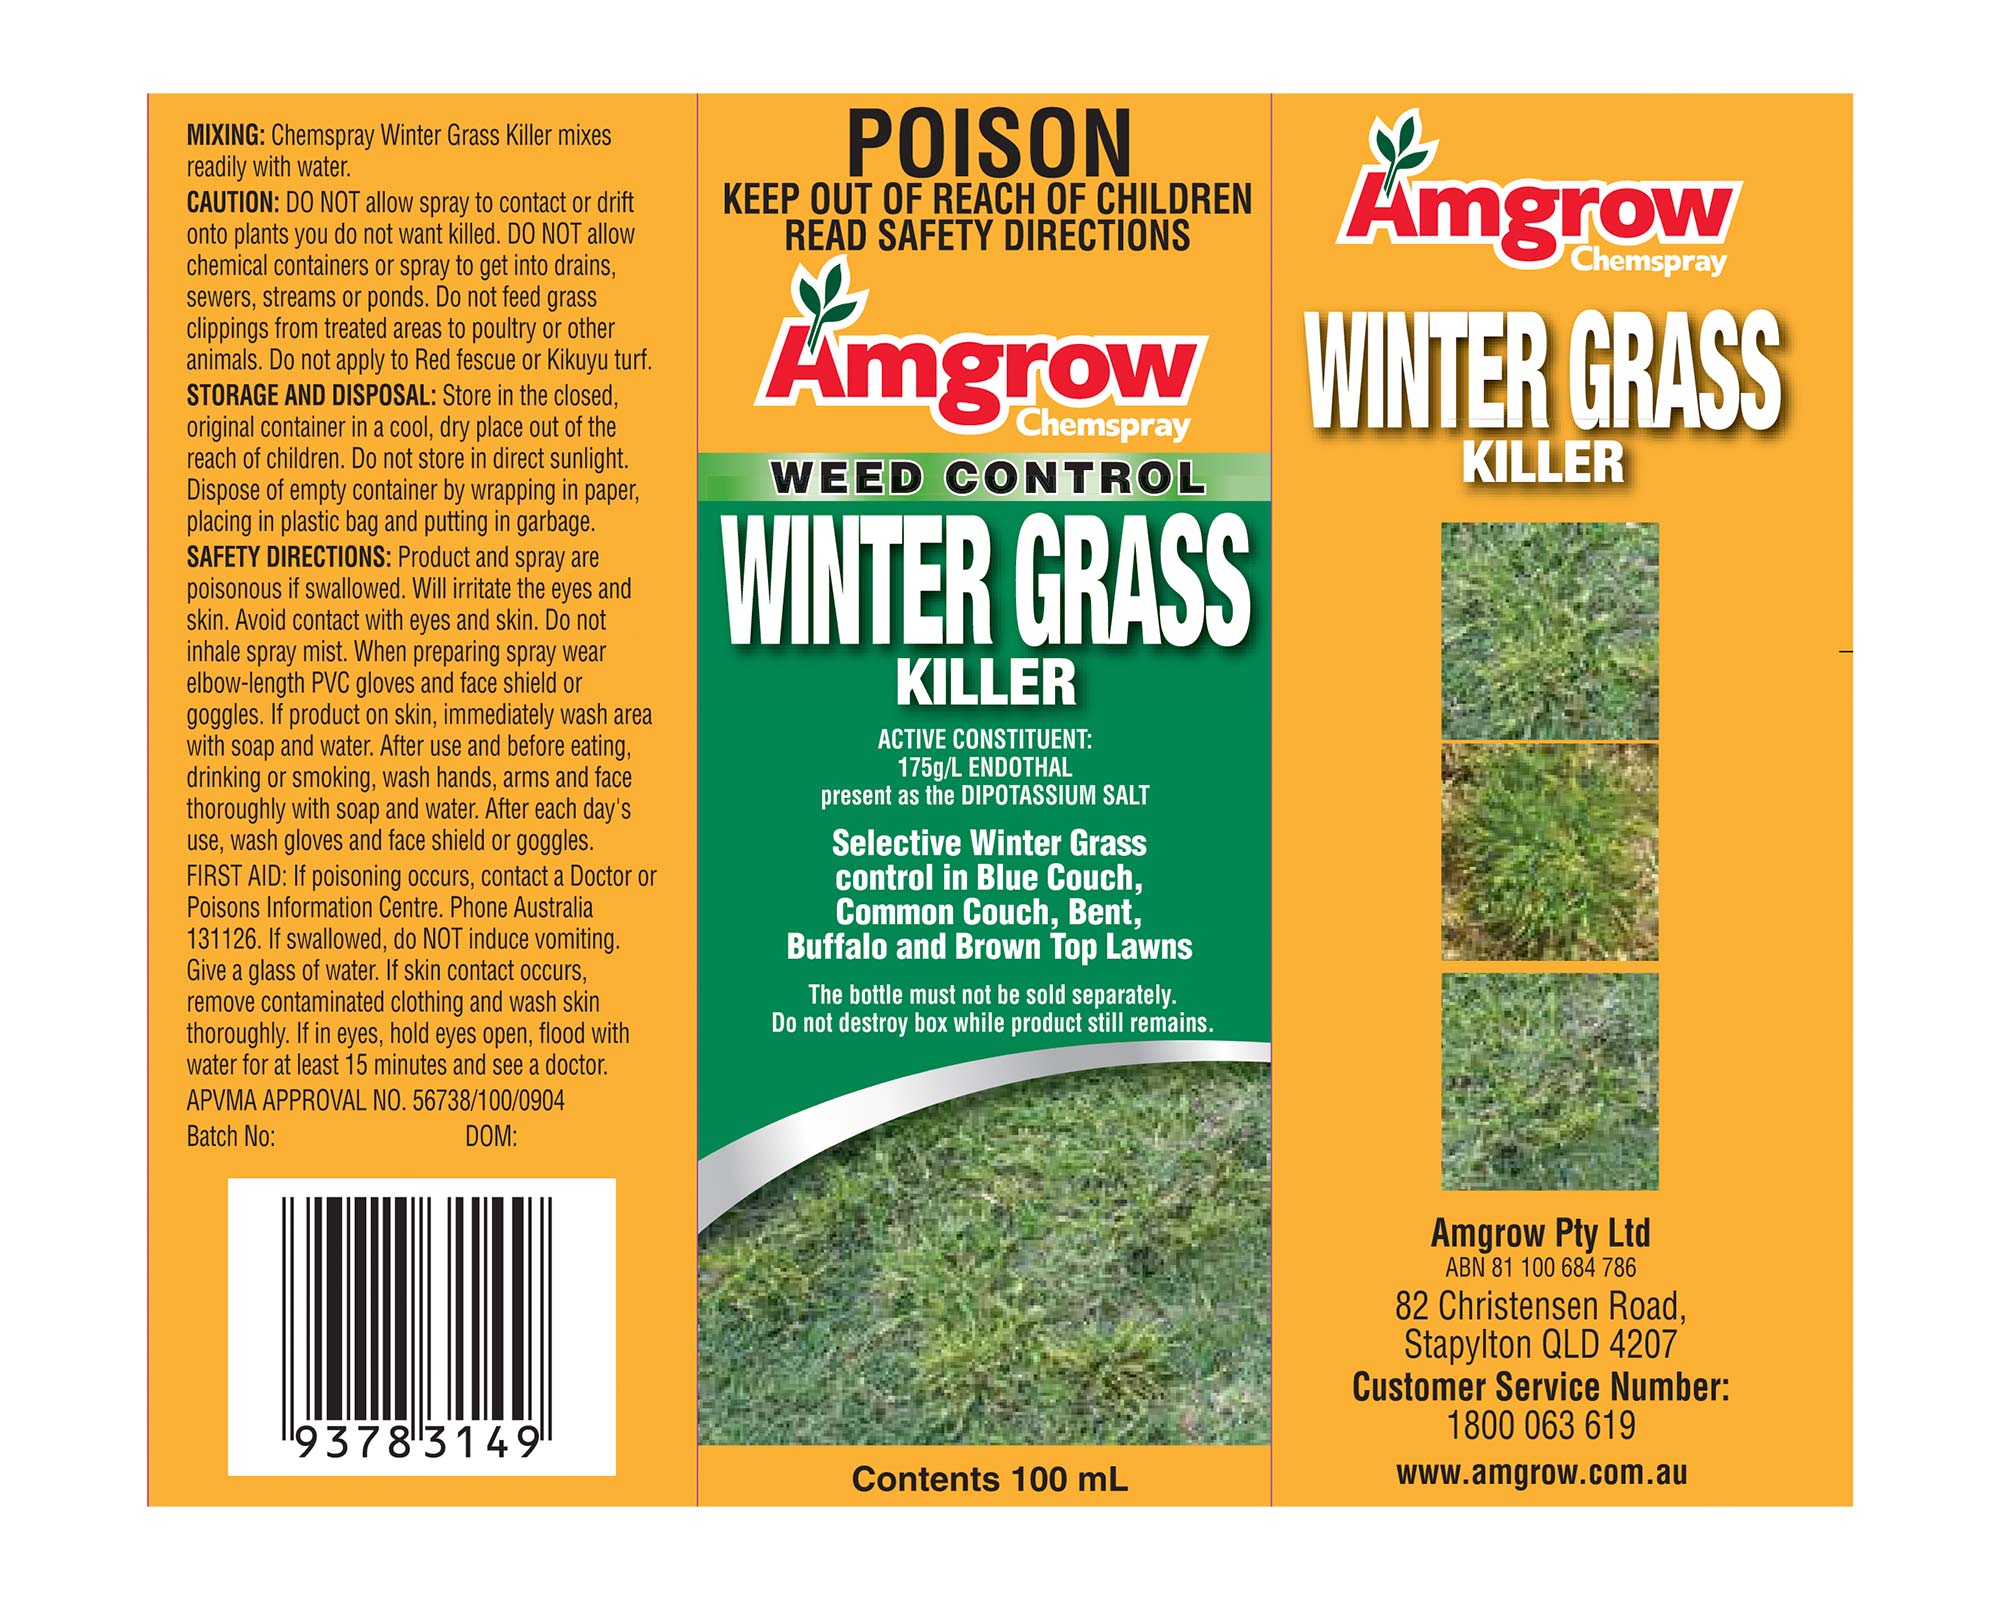 Label - Winter Grass Killer - Amgrow